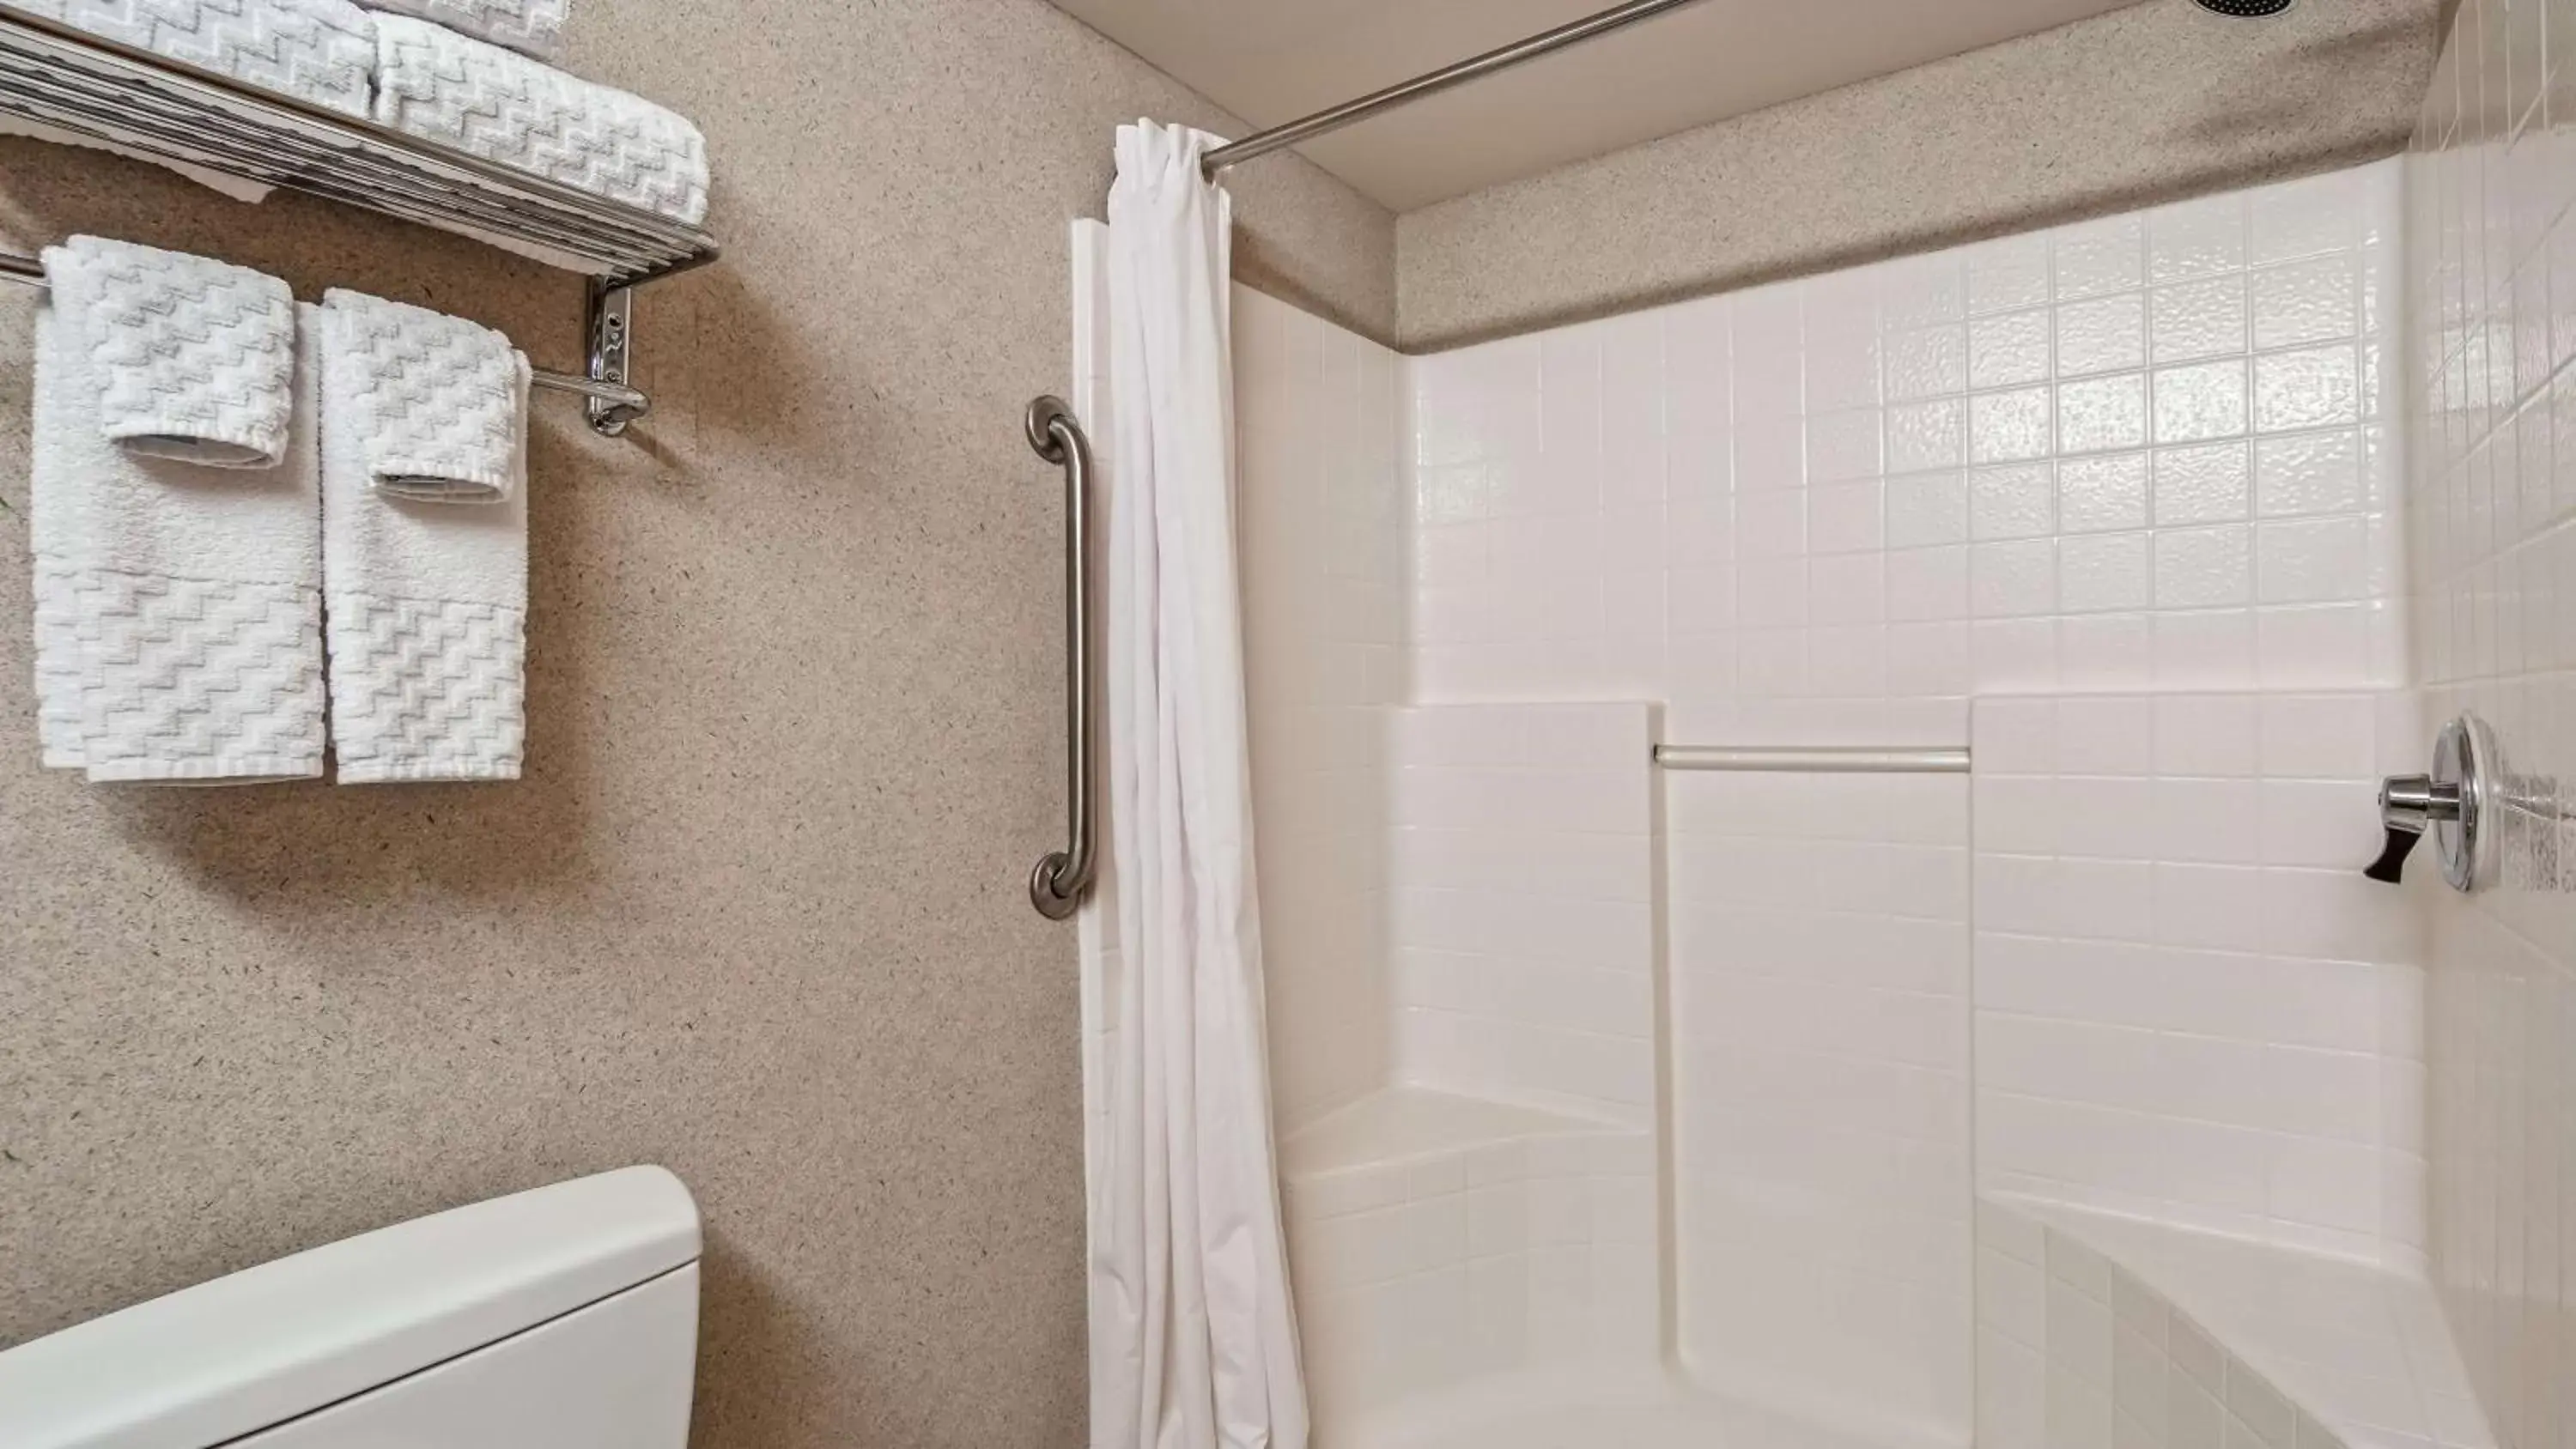 Photo of the whole room, Bathroom in Best Western Plus North Las Vegas Inn & Suites